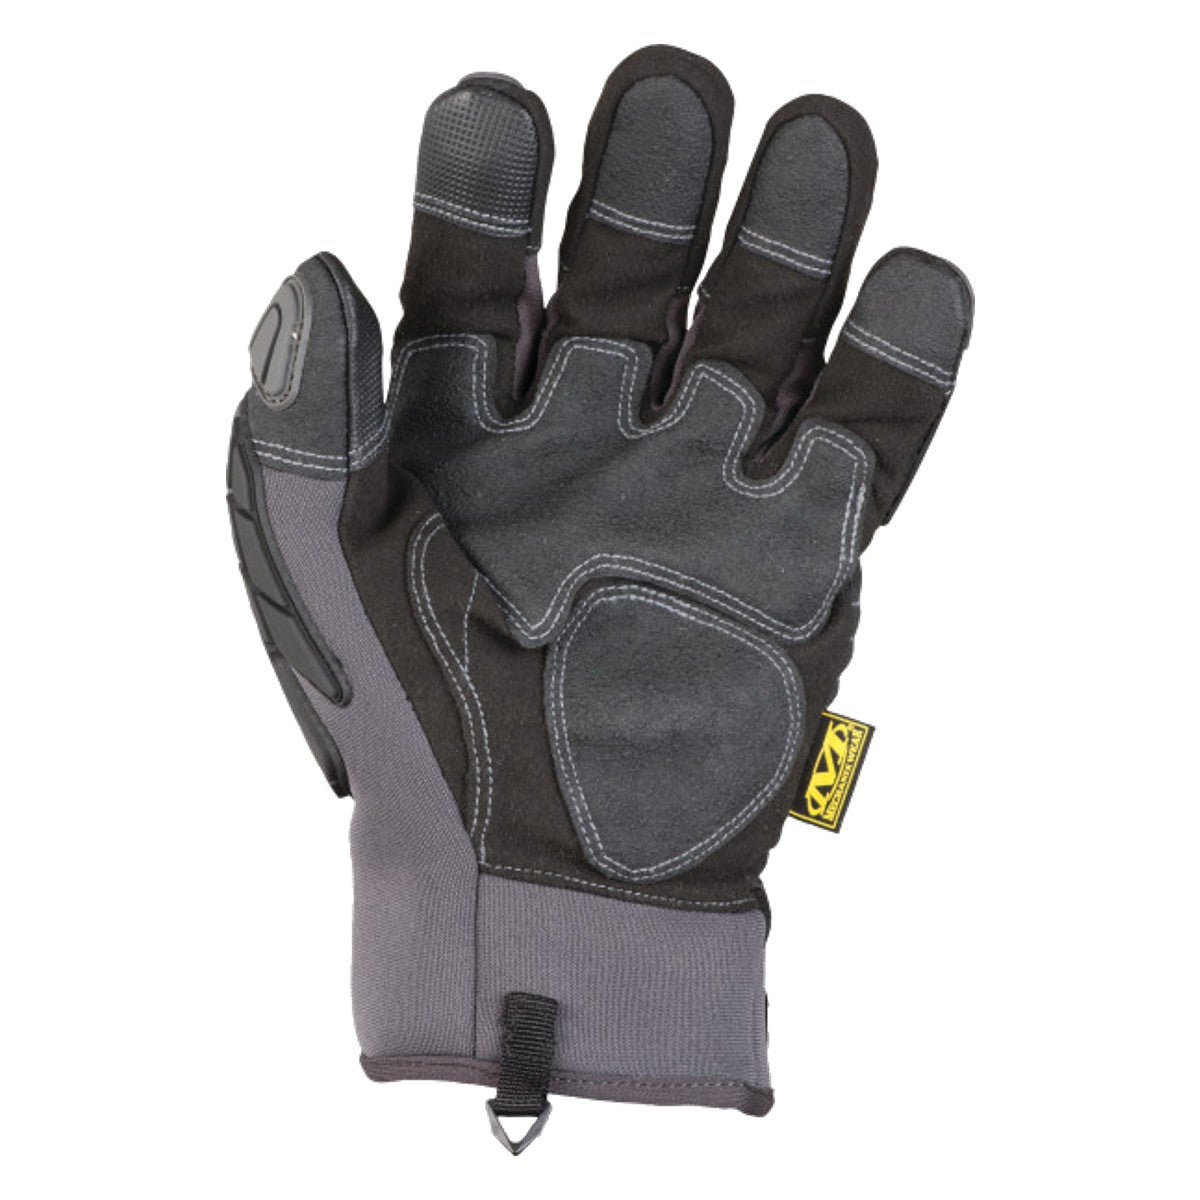 Mechanixwear Waterproof Winter Impact Pro Glove